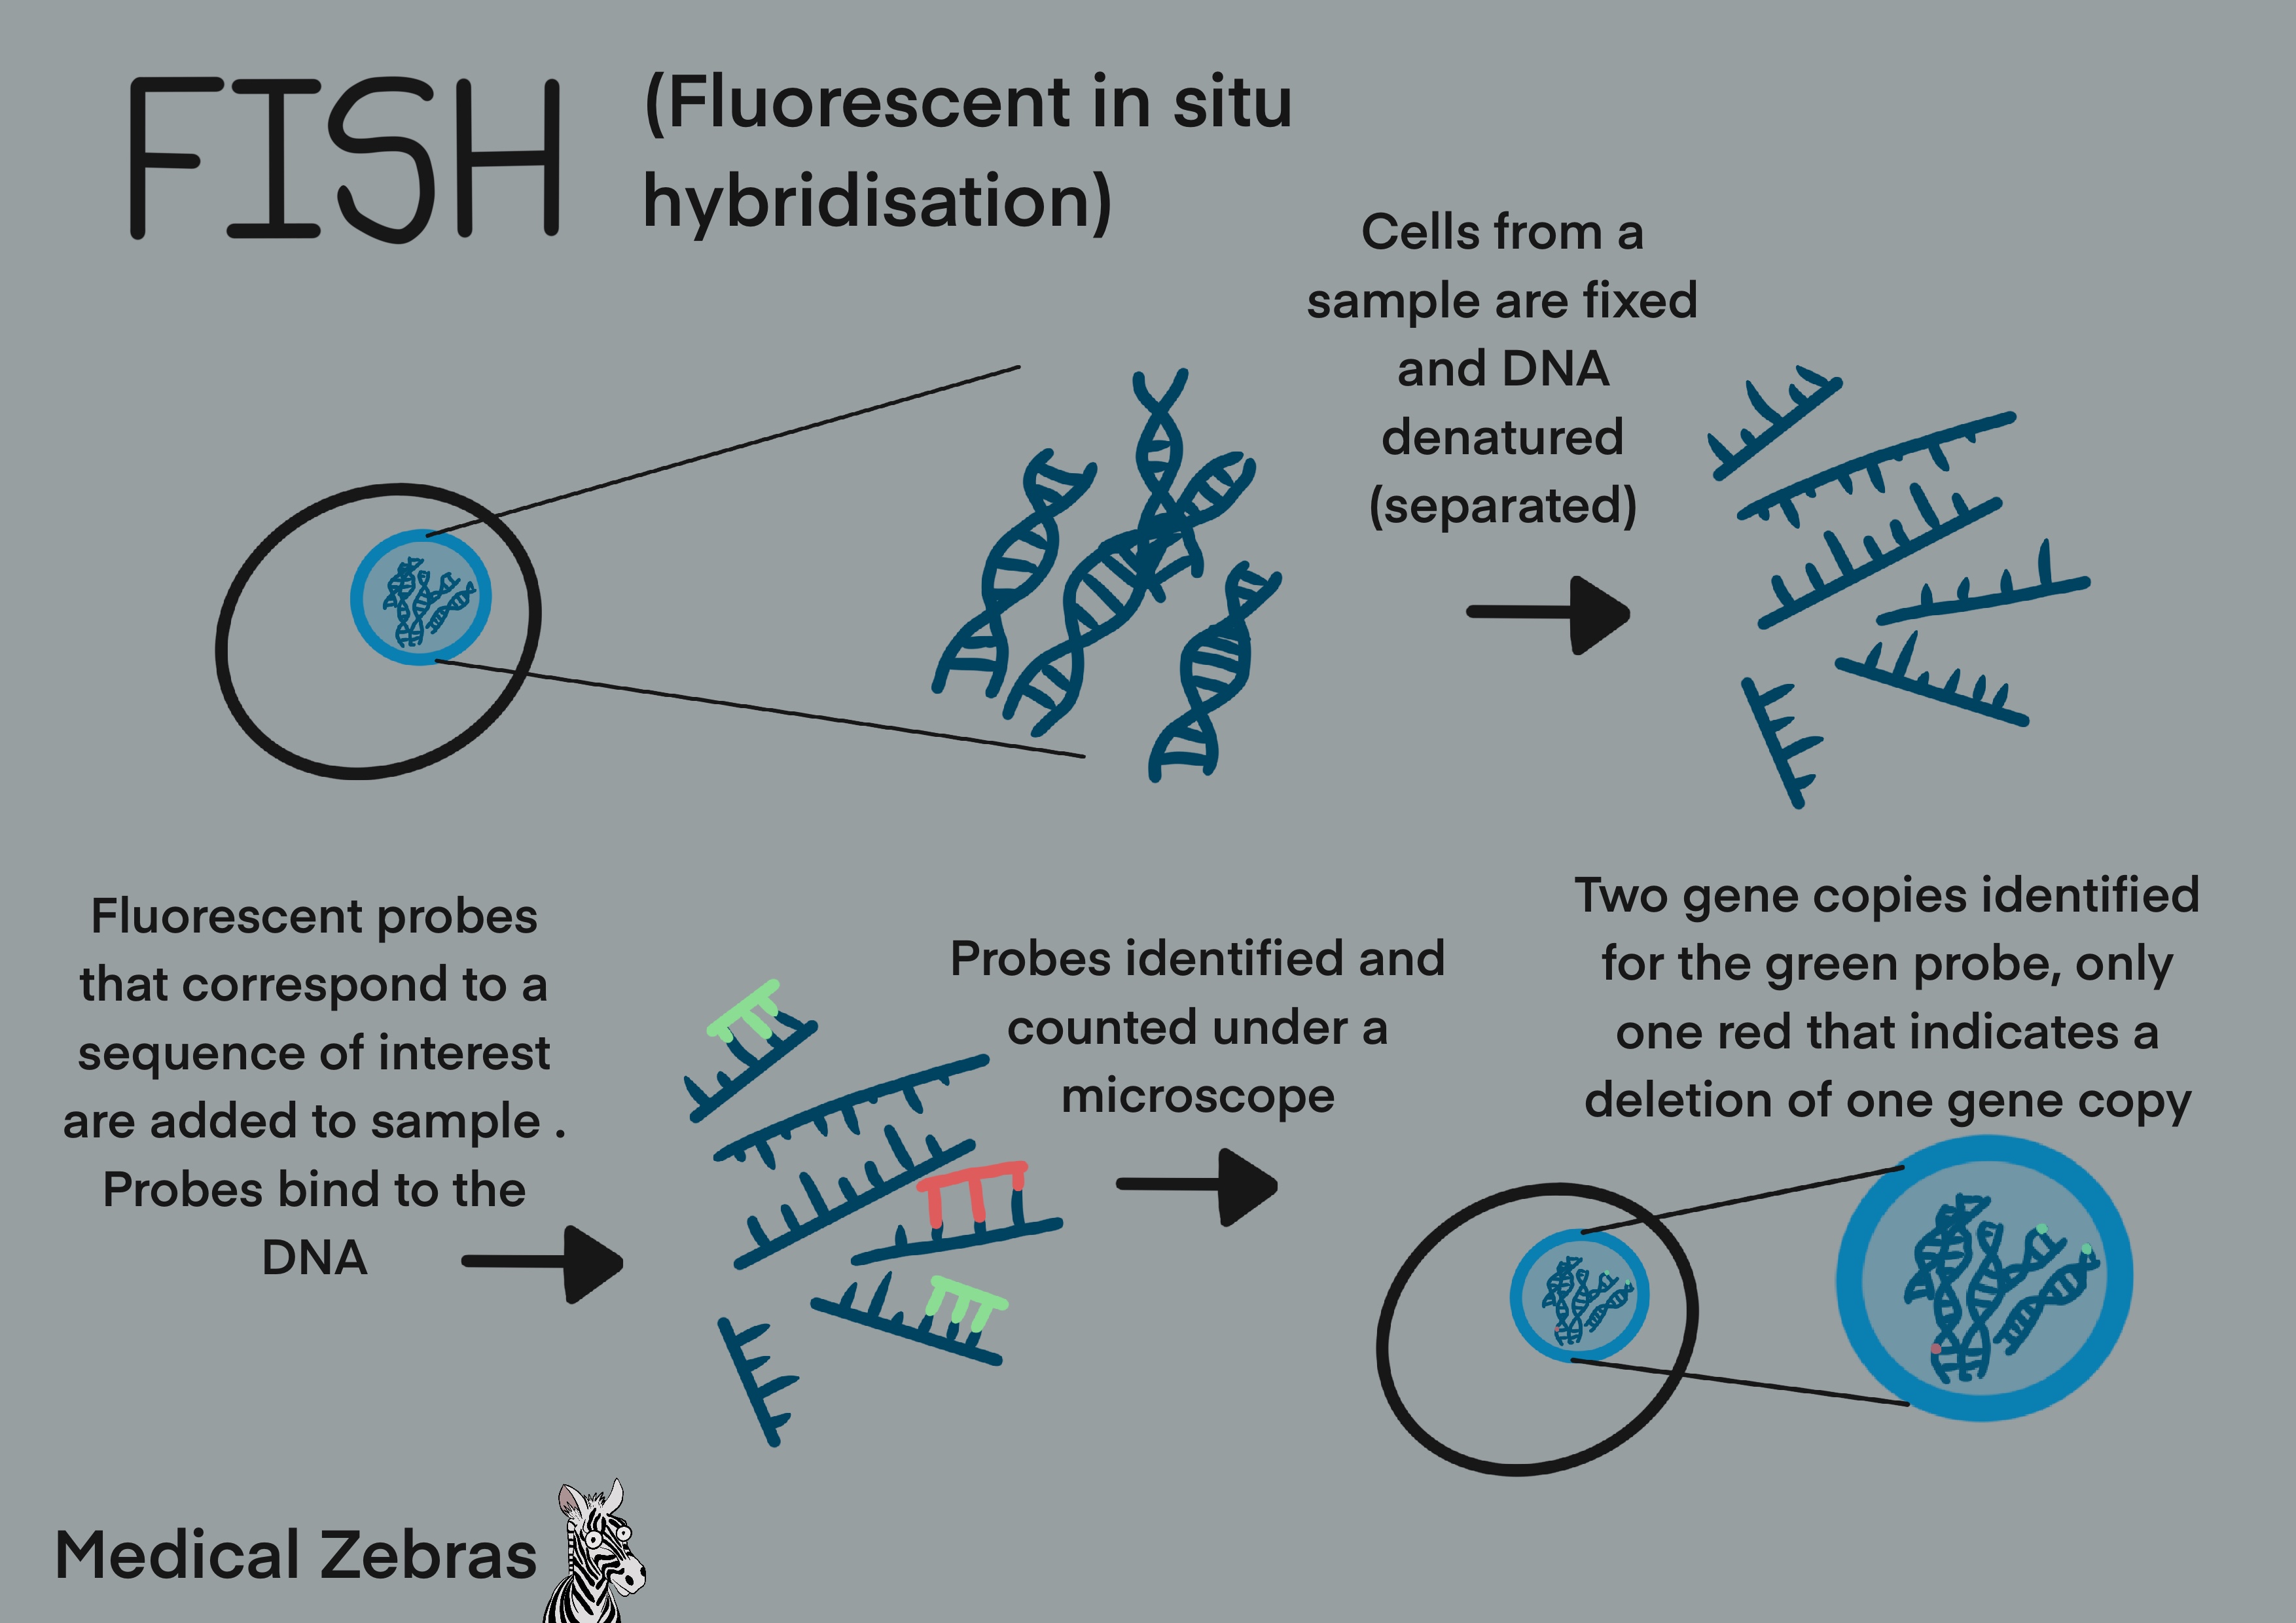 FISH genetic method explained